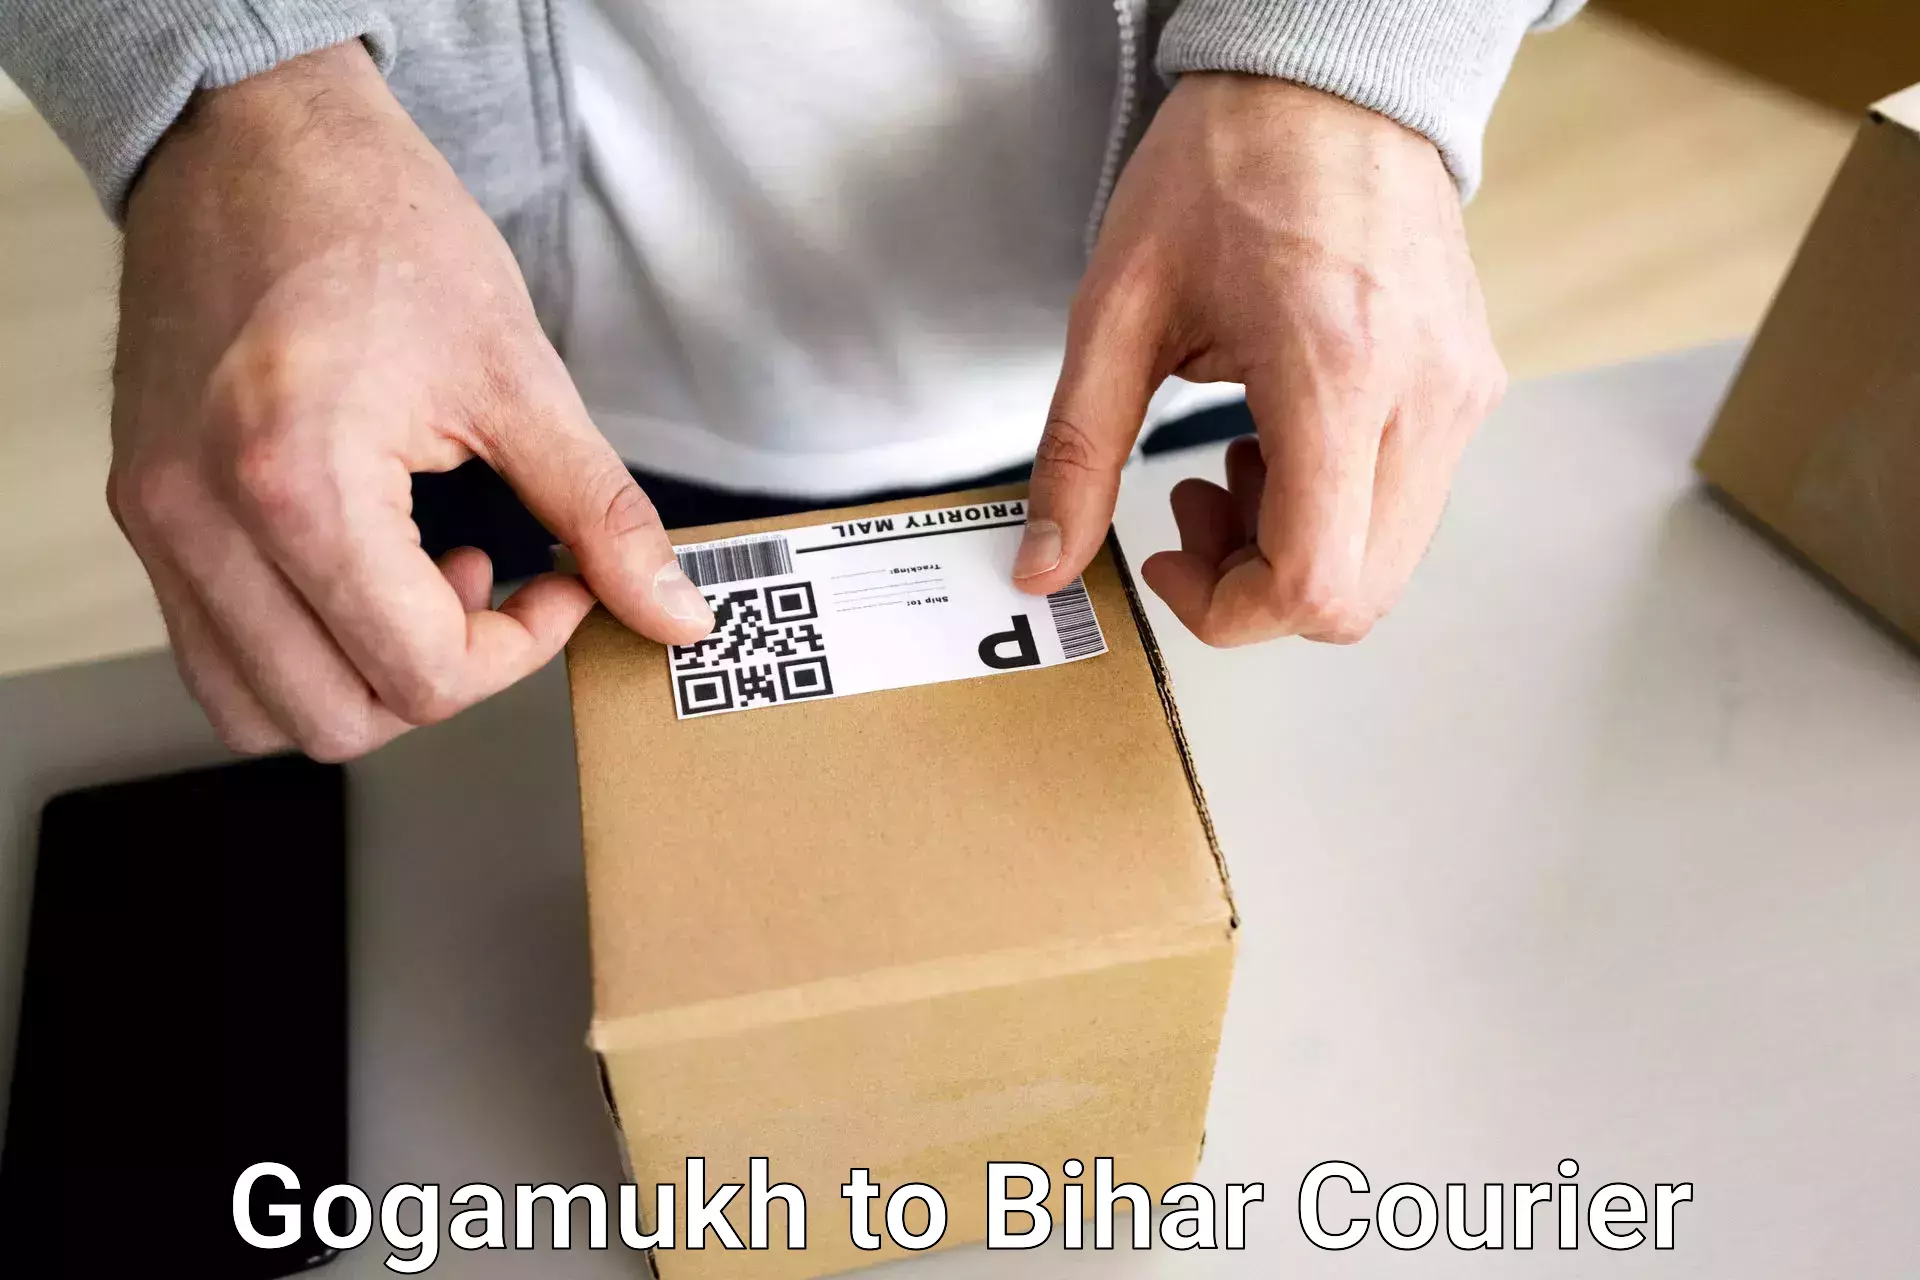 Baggage courier FAQs Gogamukh to Khodaganj